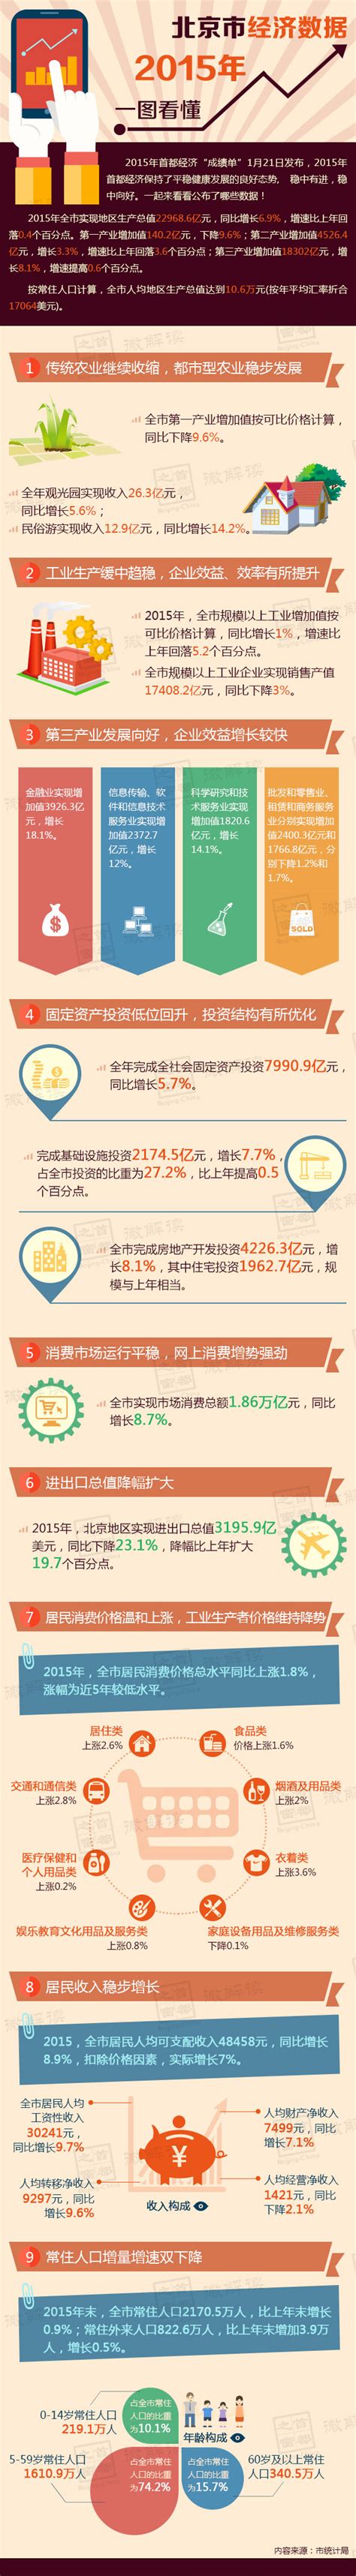 数据 - 中国产业经济信息网